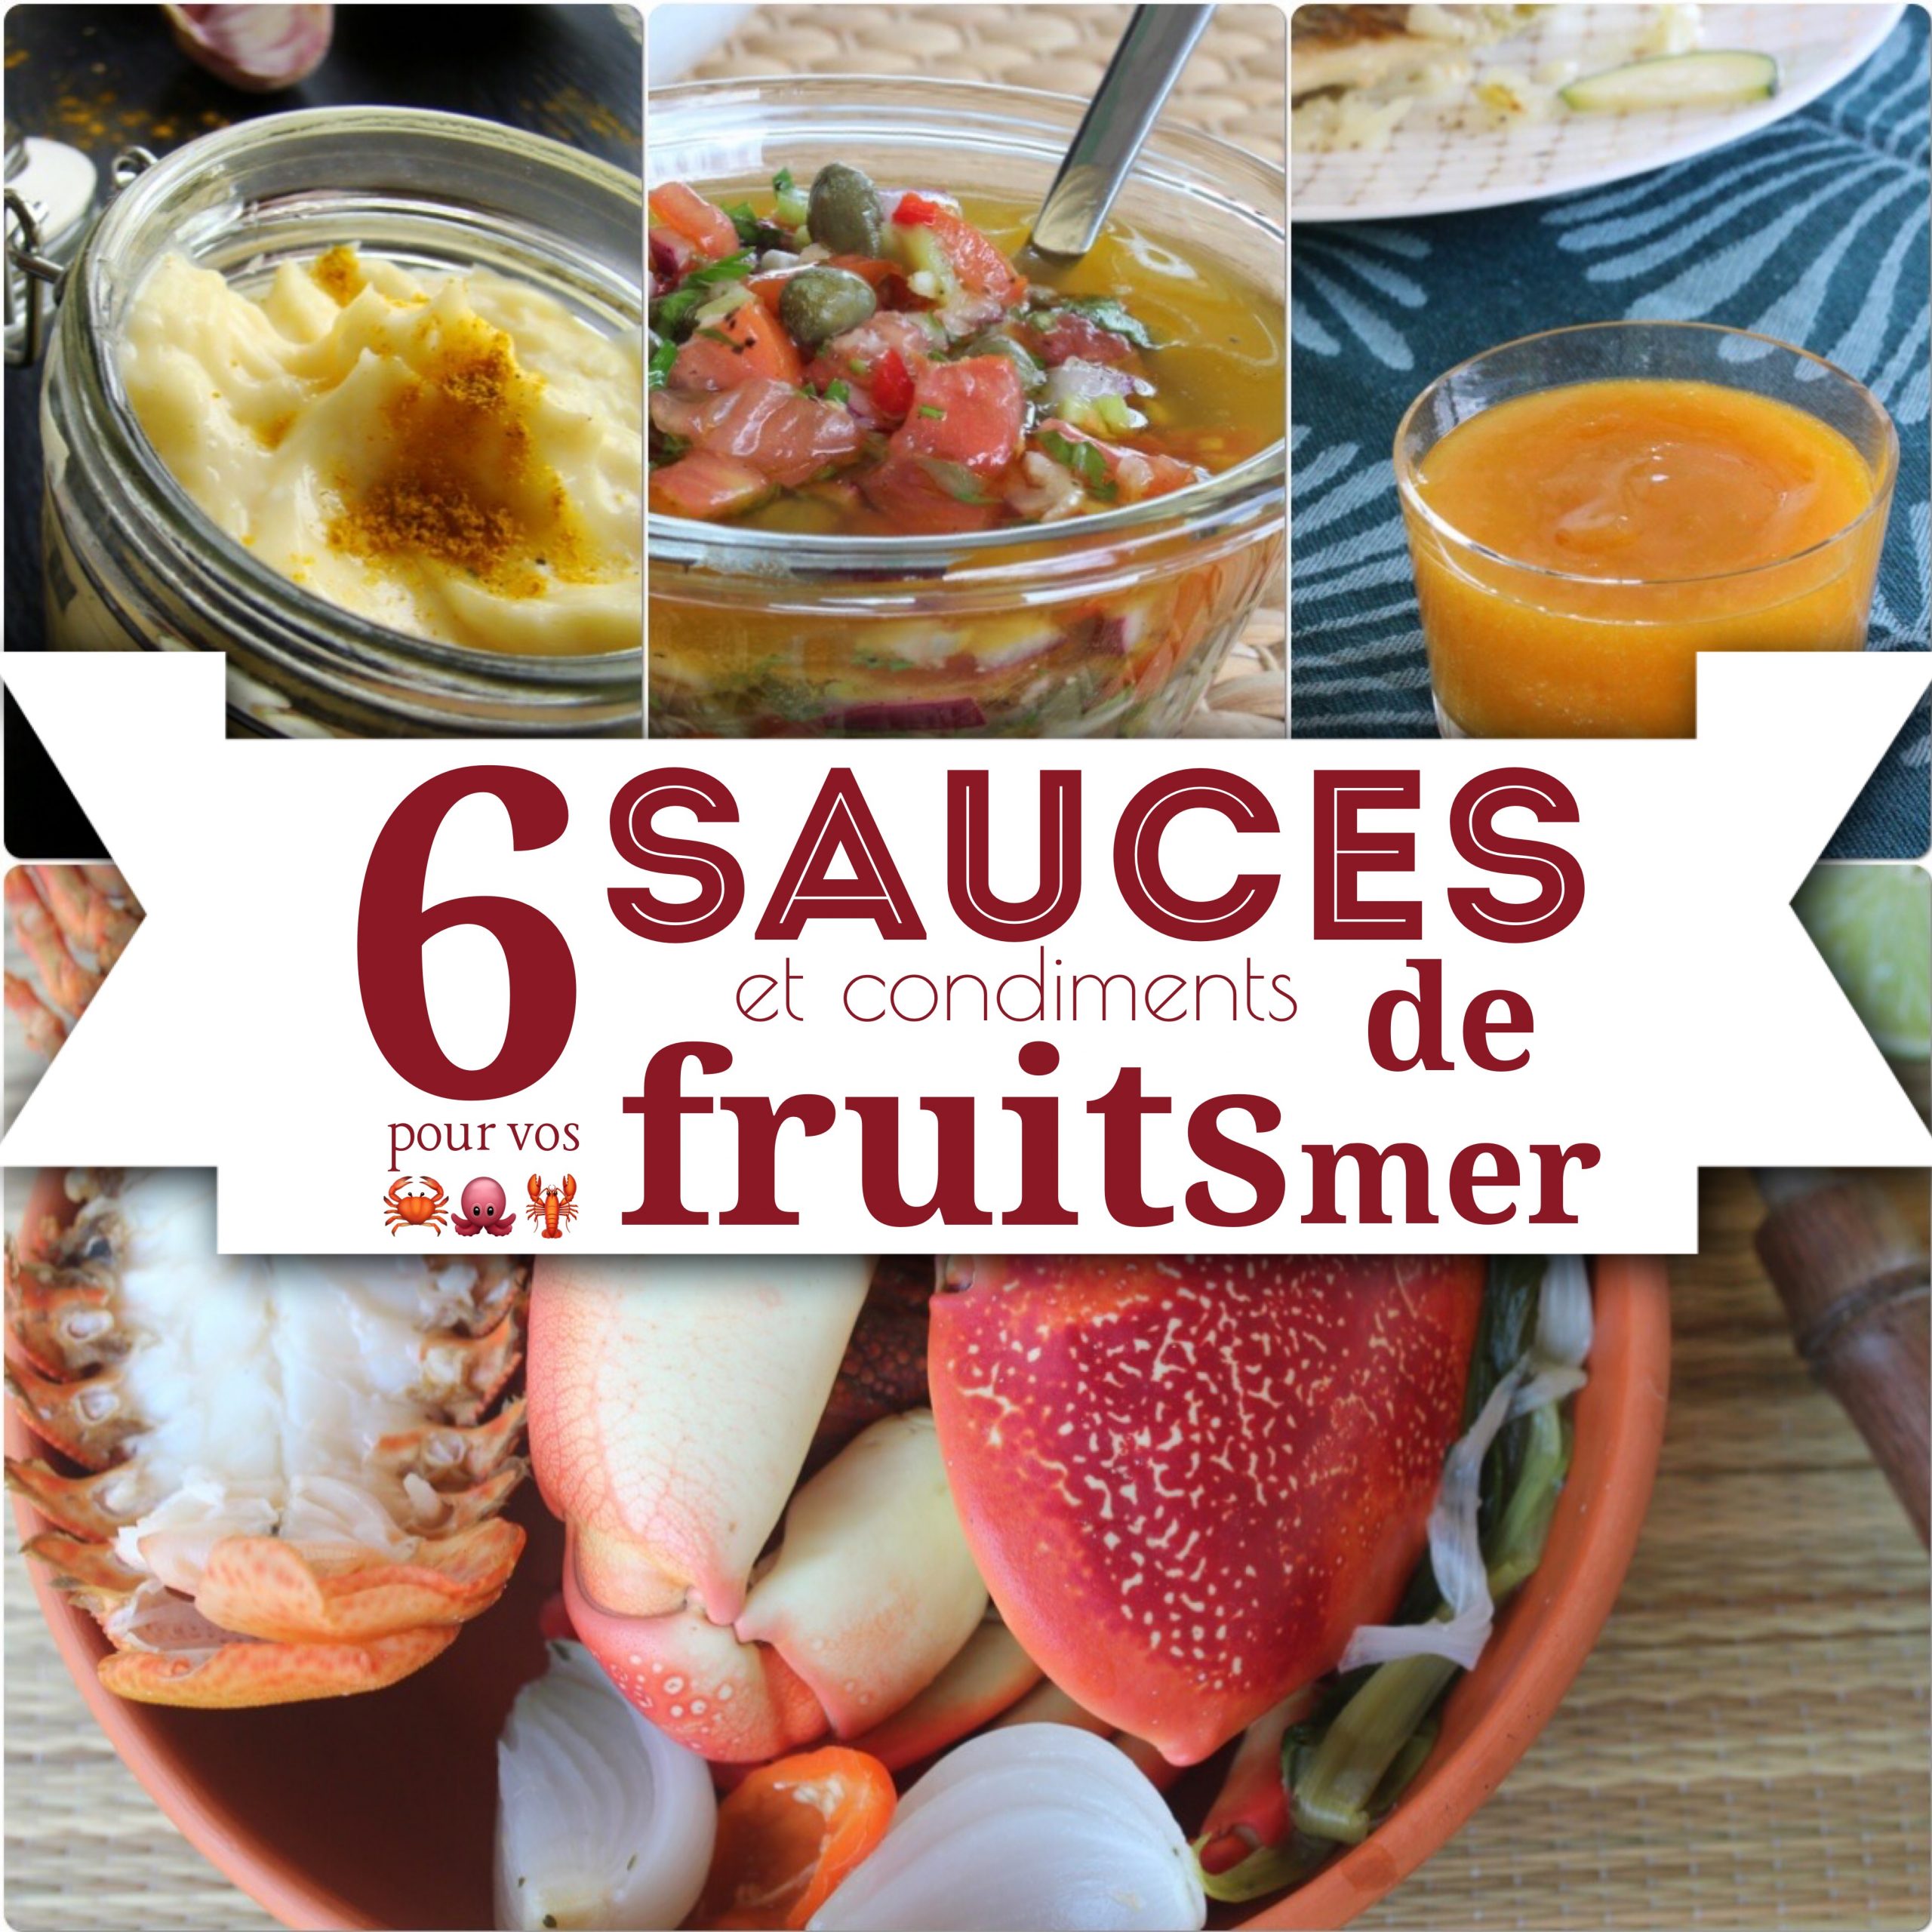 6 sauces et condiments pour vos fruits de mer